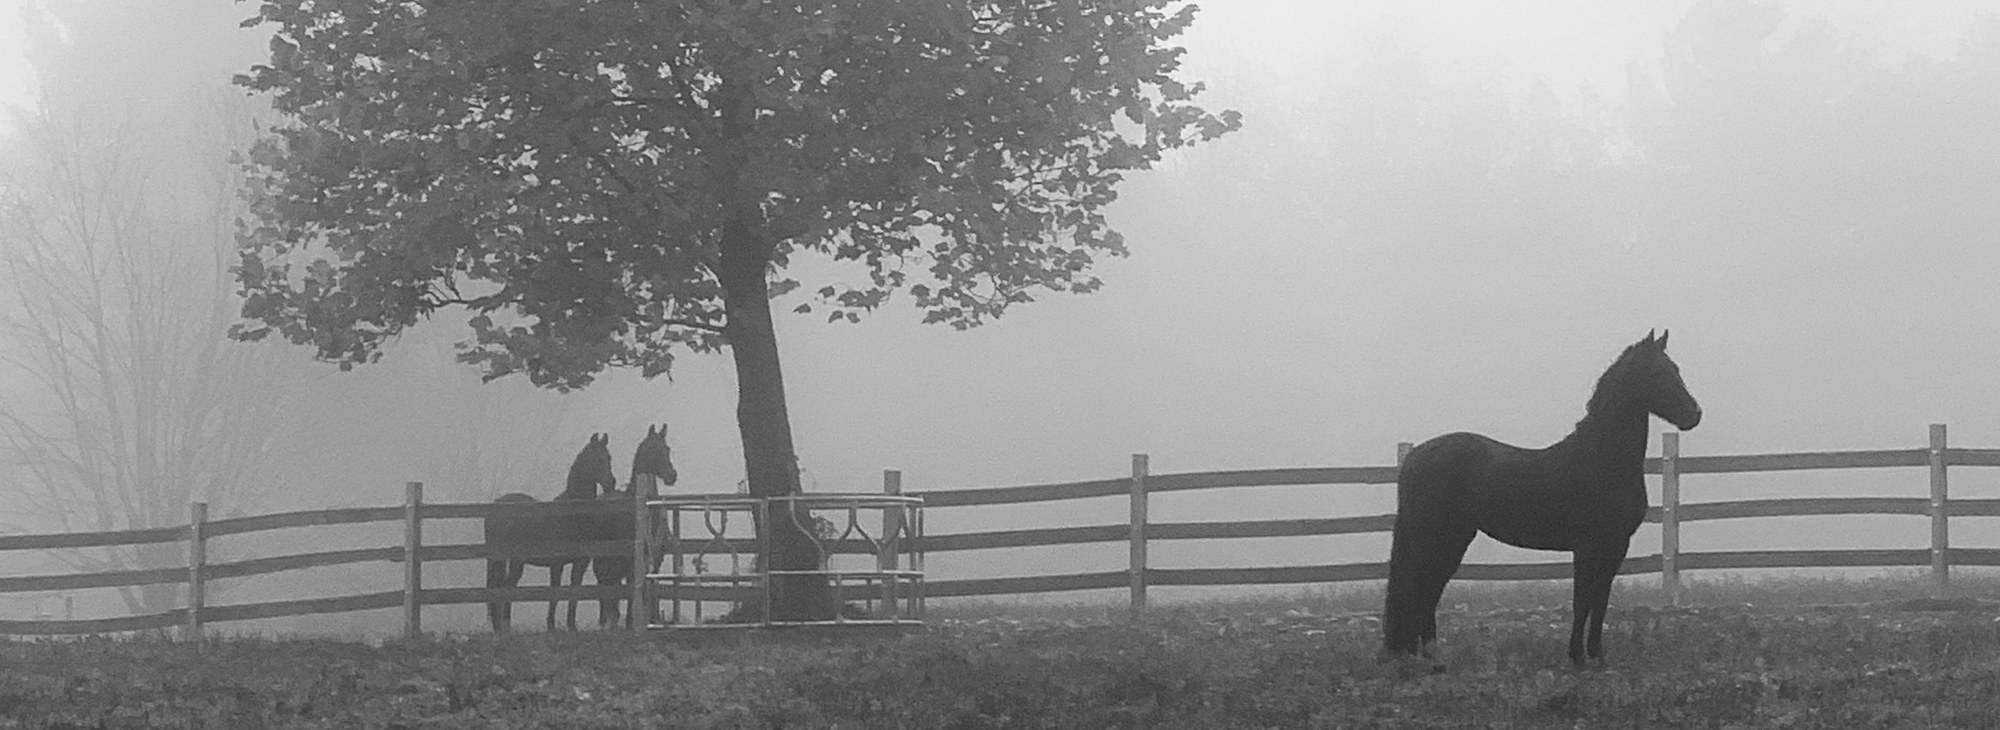 Morgan Standing in a Misty Field